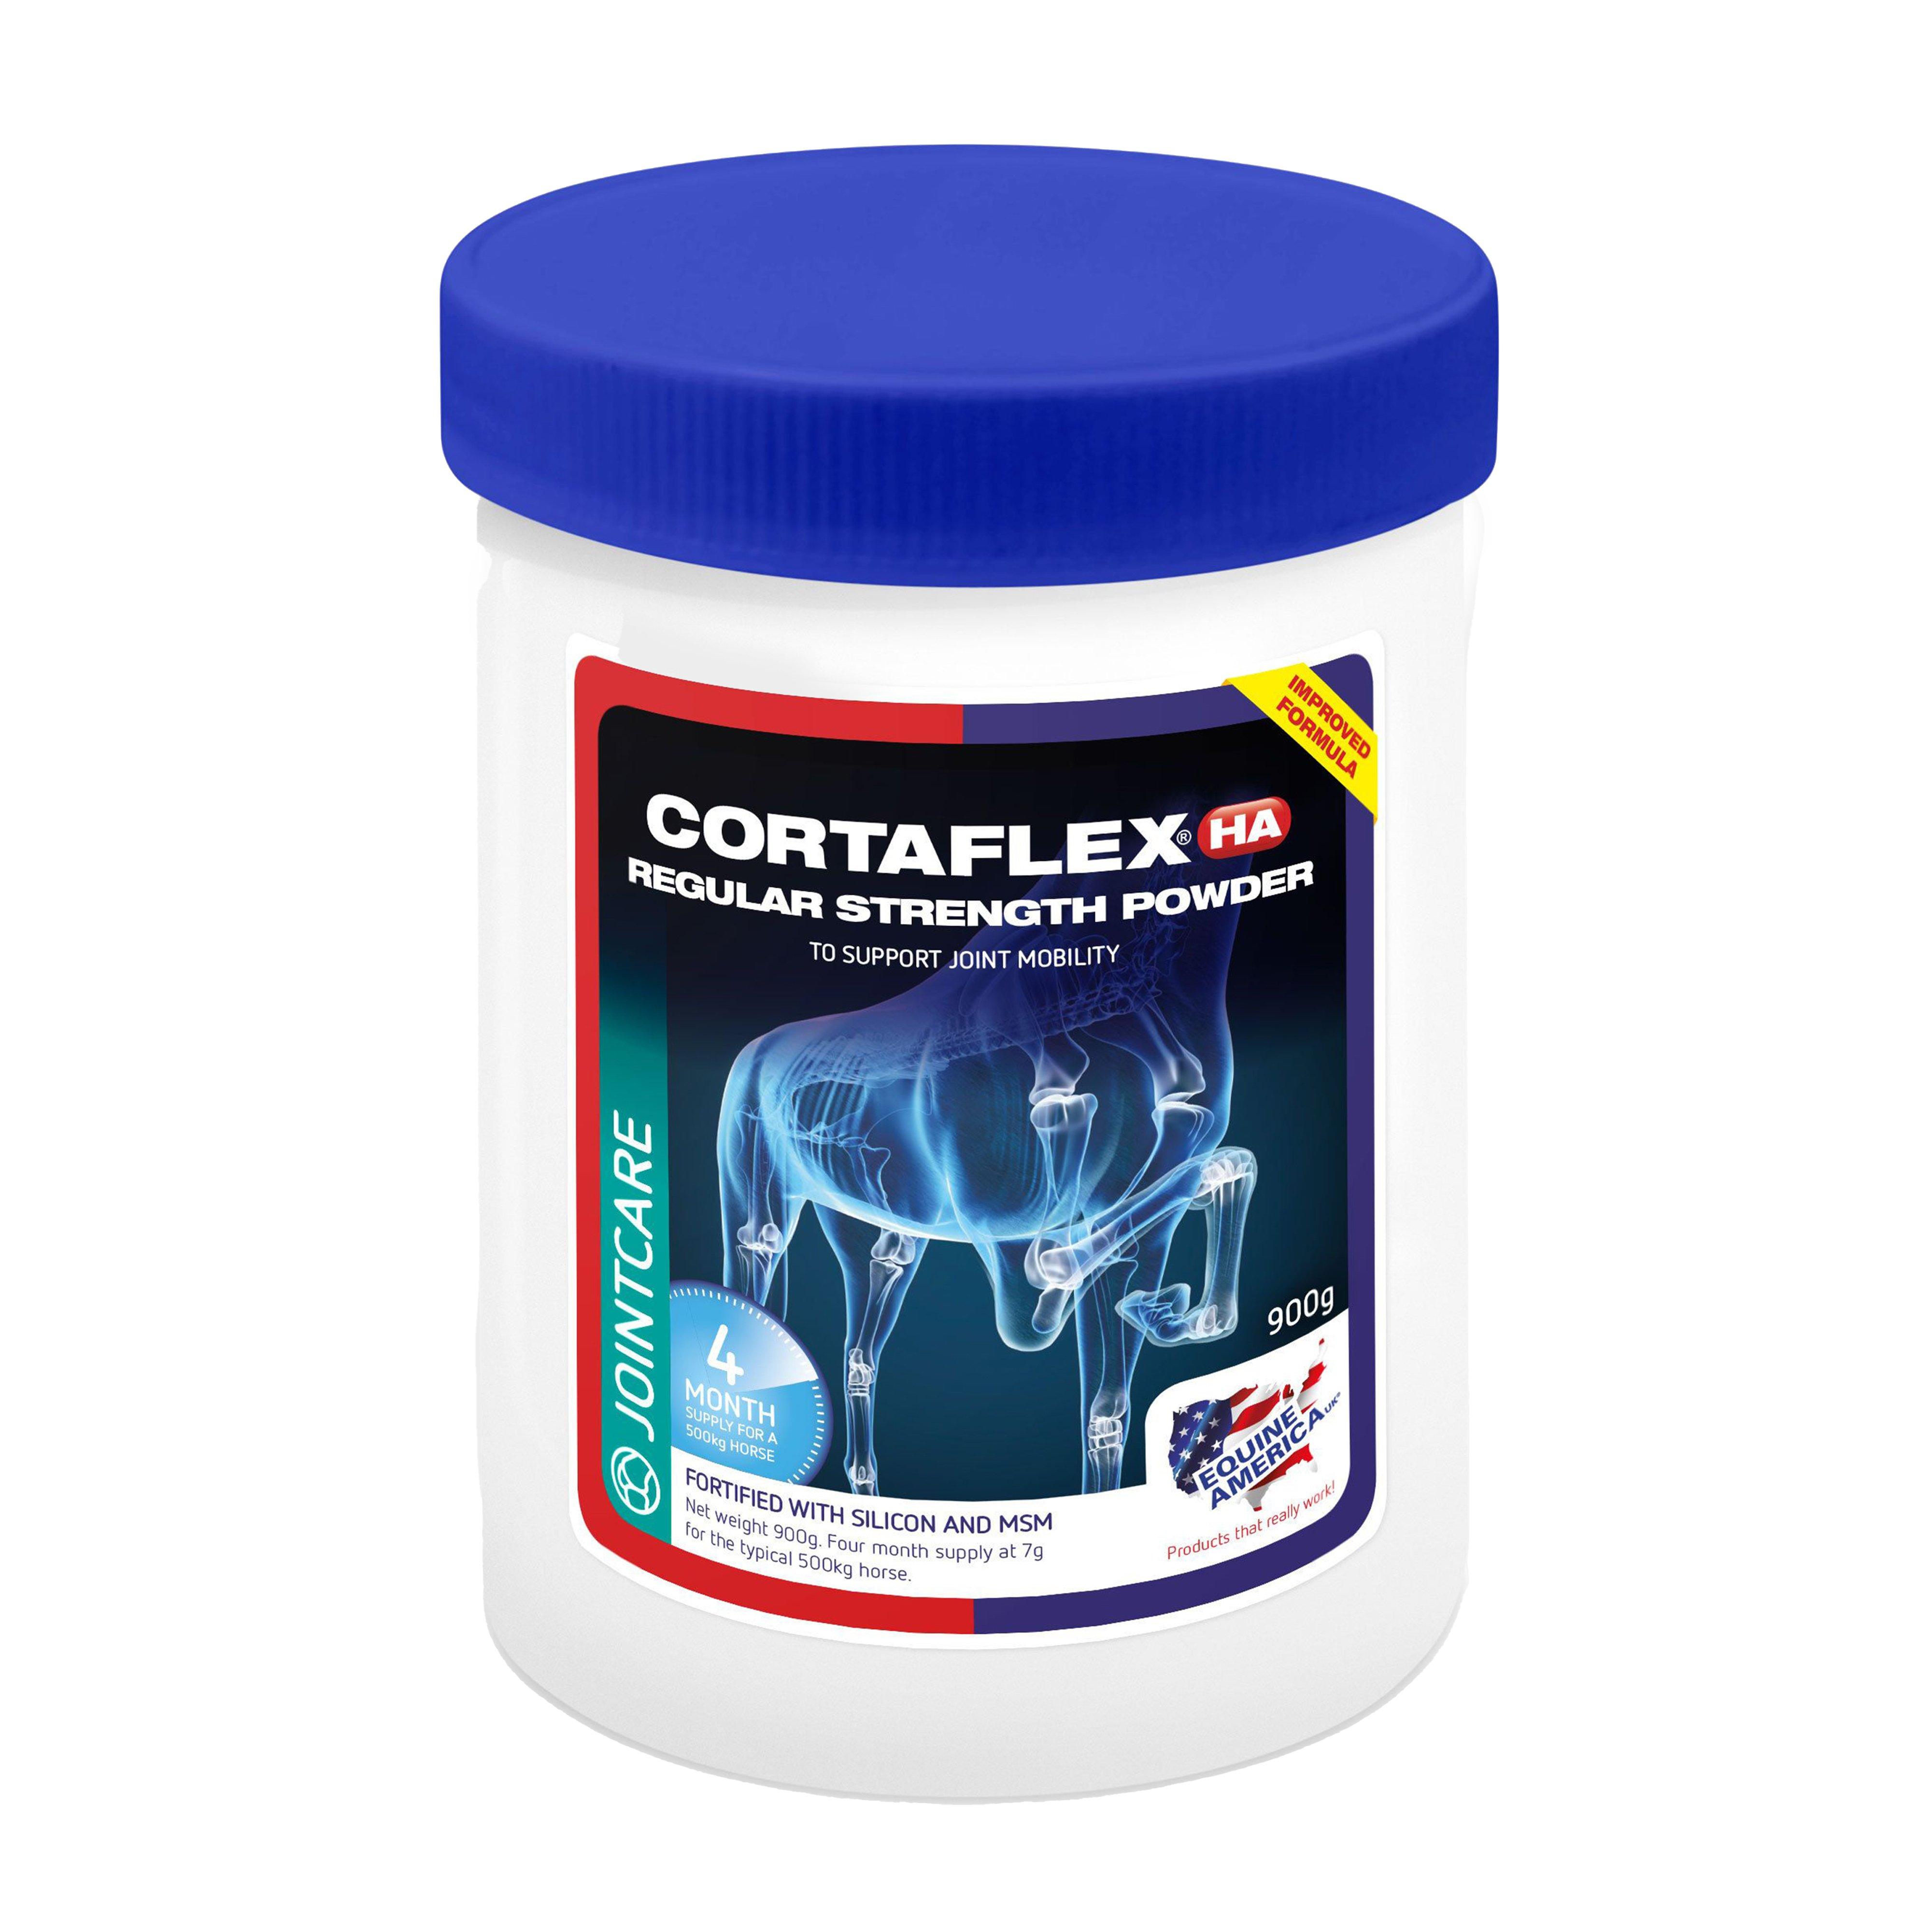 Cortaflex Powder